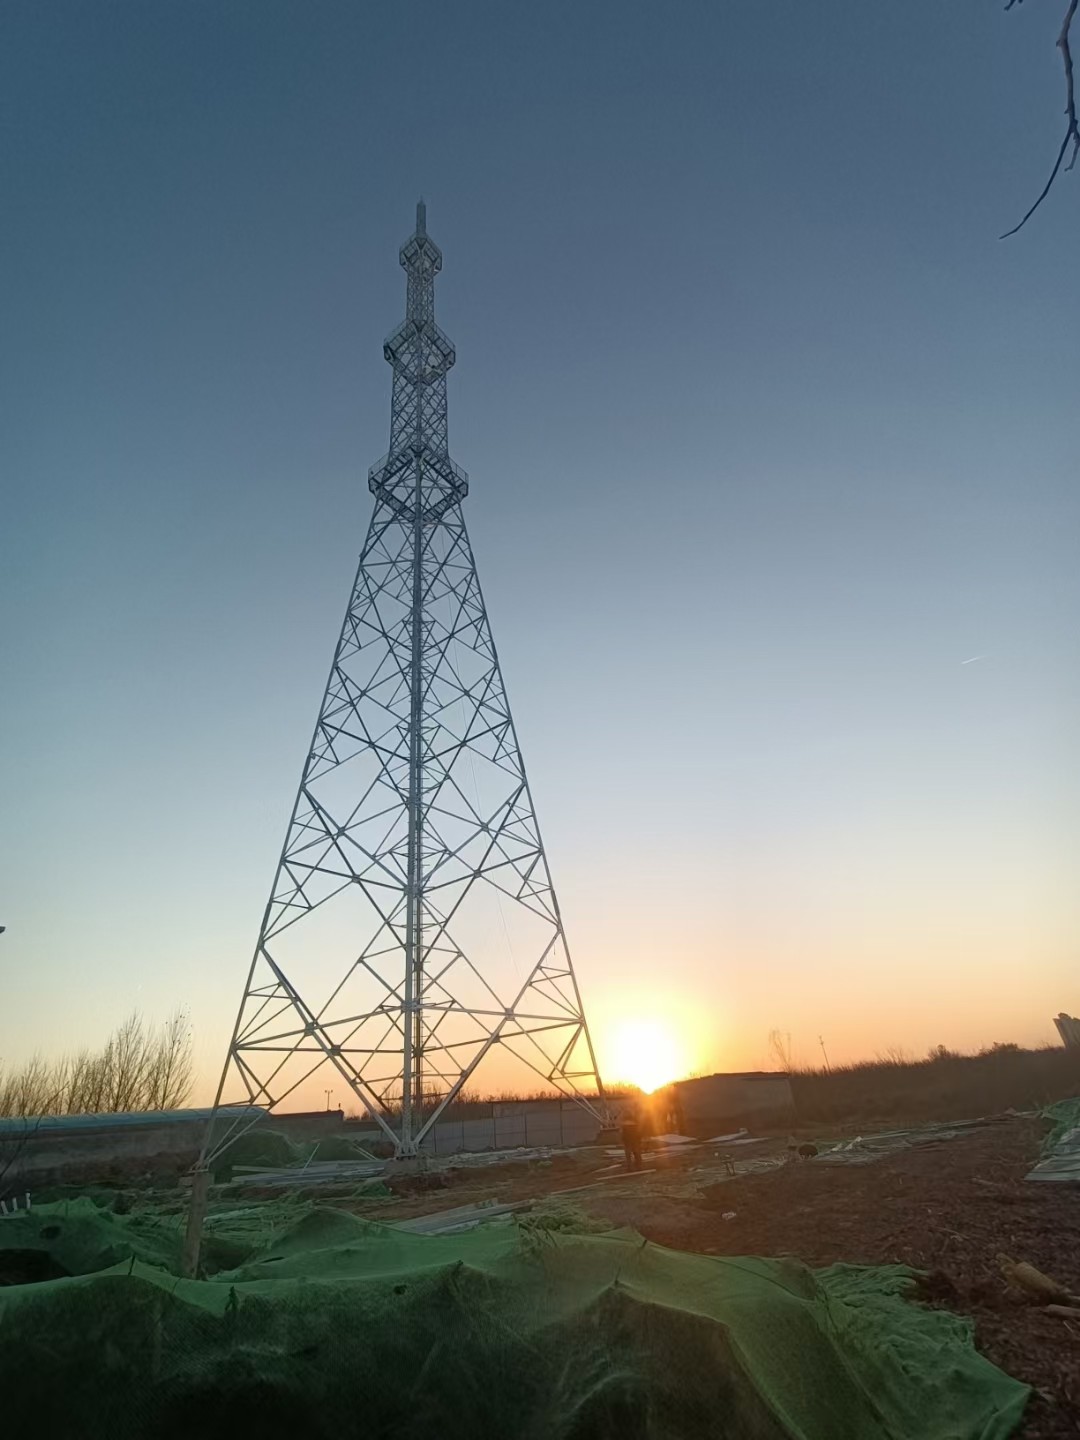 Антенны радио Fm башни связи Gsm 5g и рангоут микроволн высокий